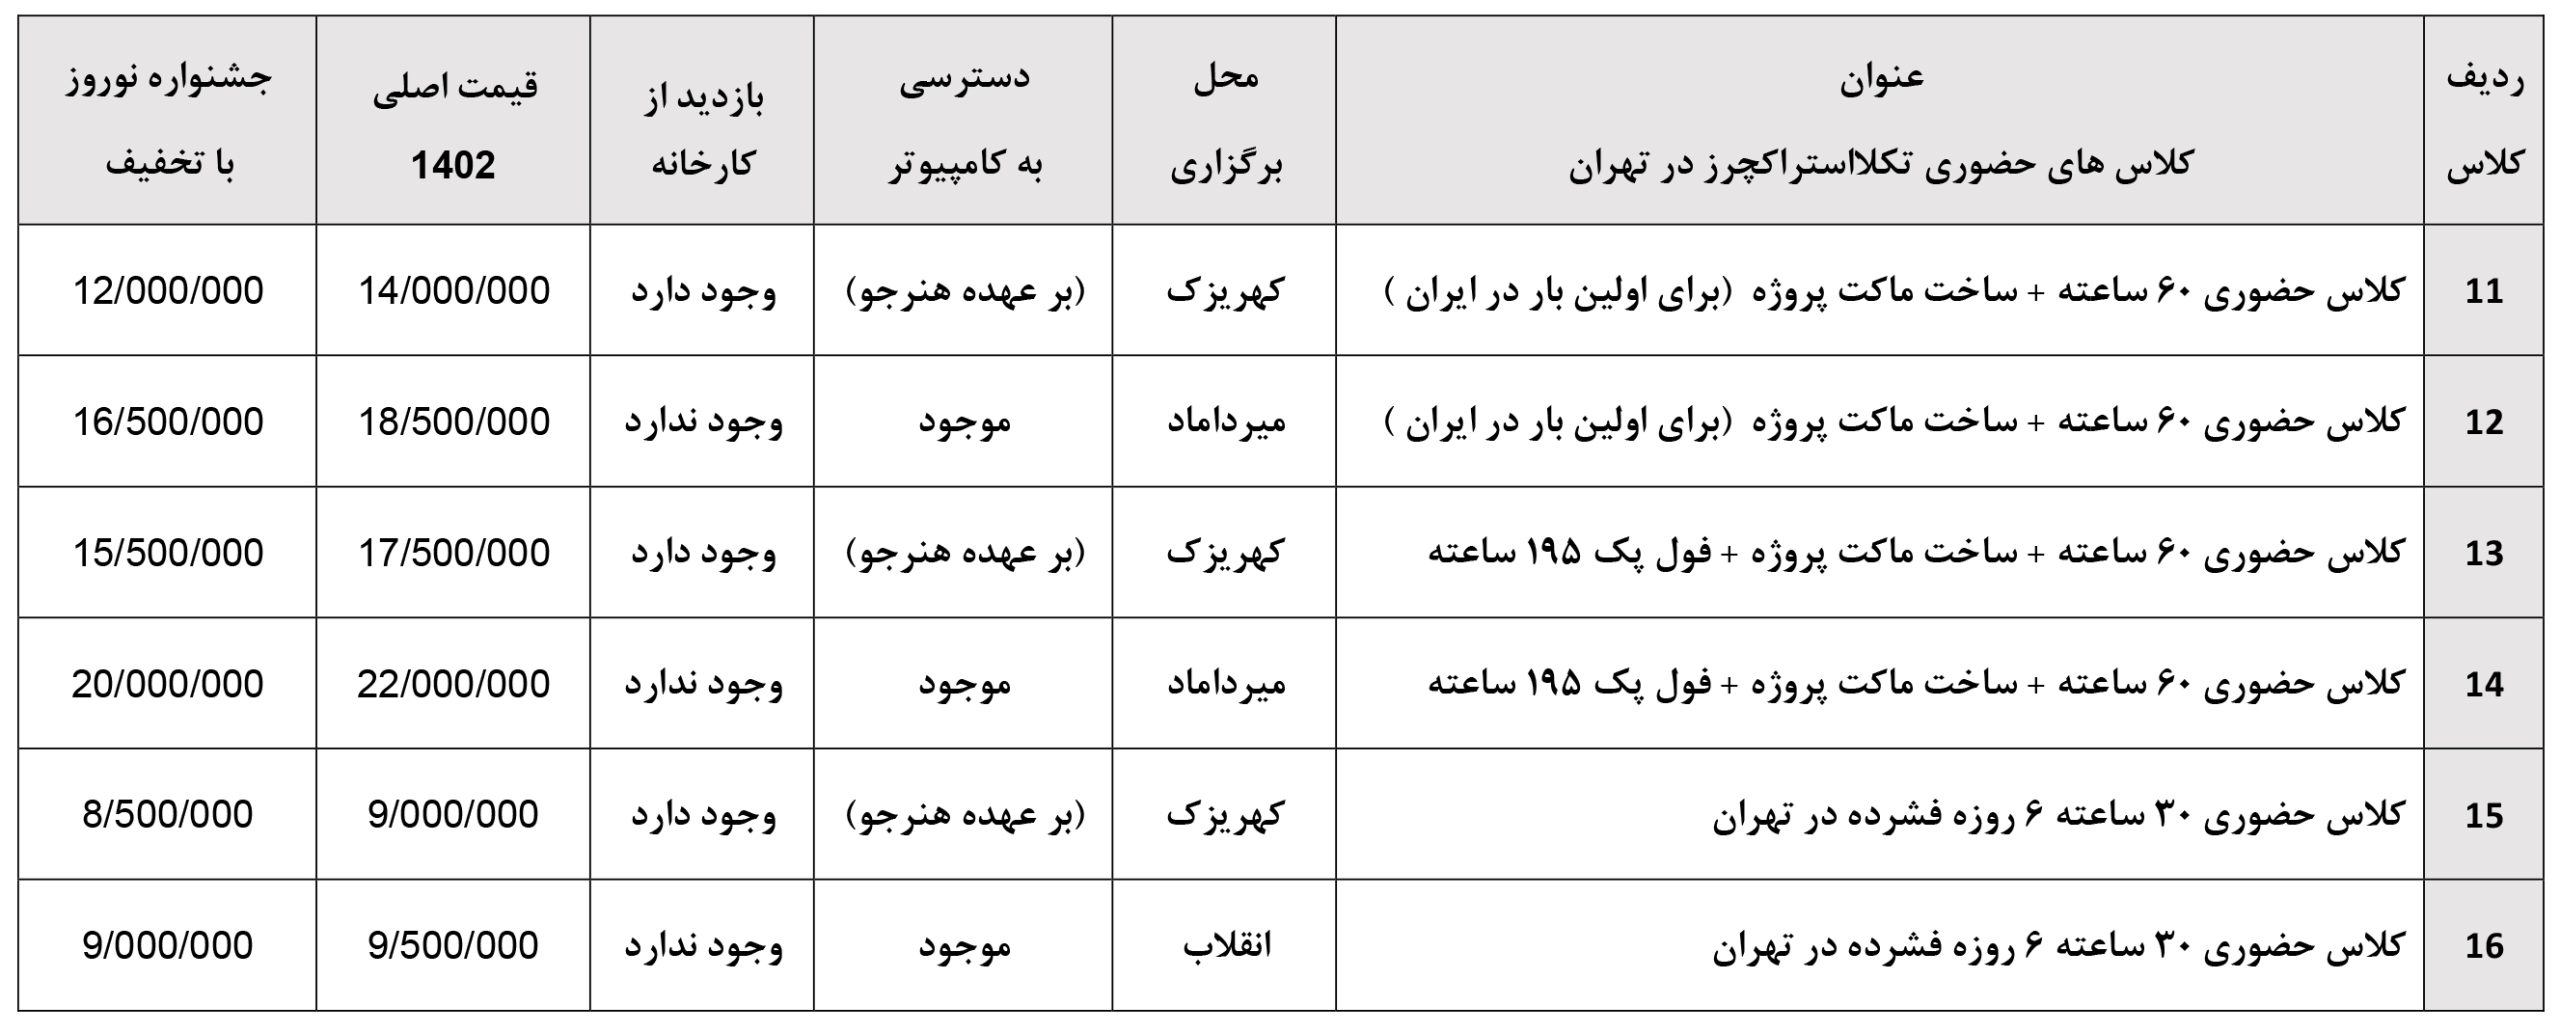 کلاس های حضوری تکلااستراکچرز در تهران